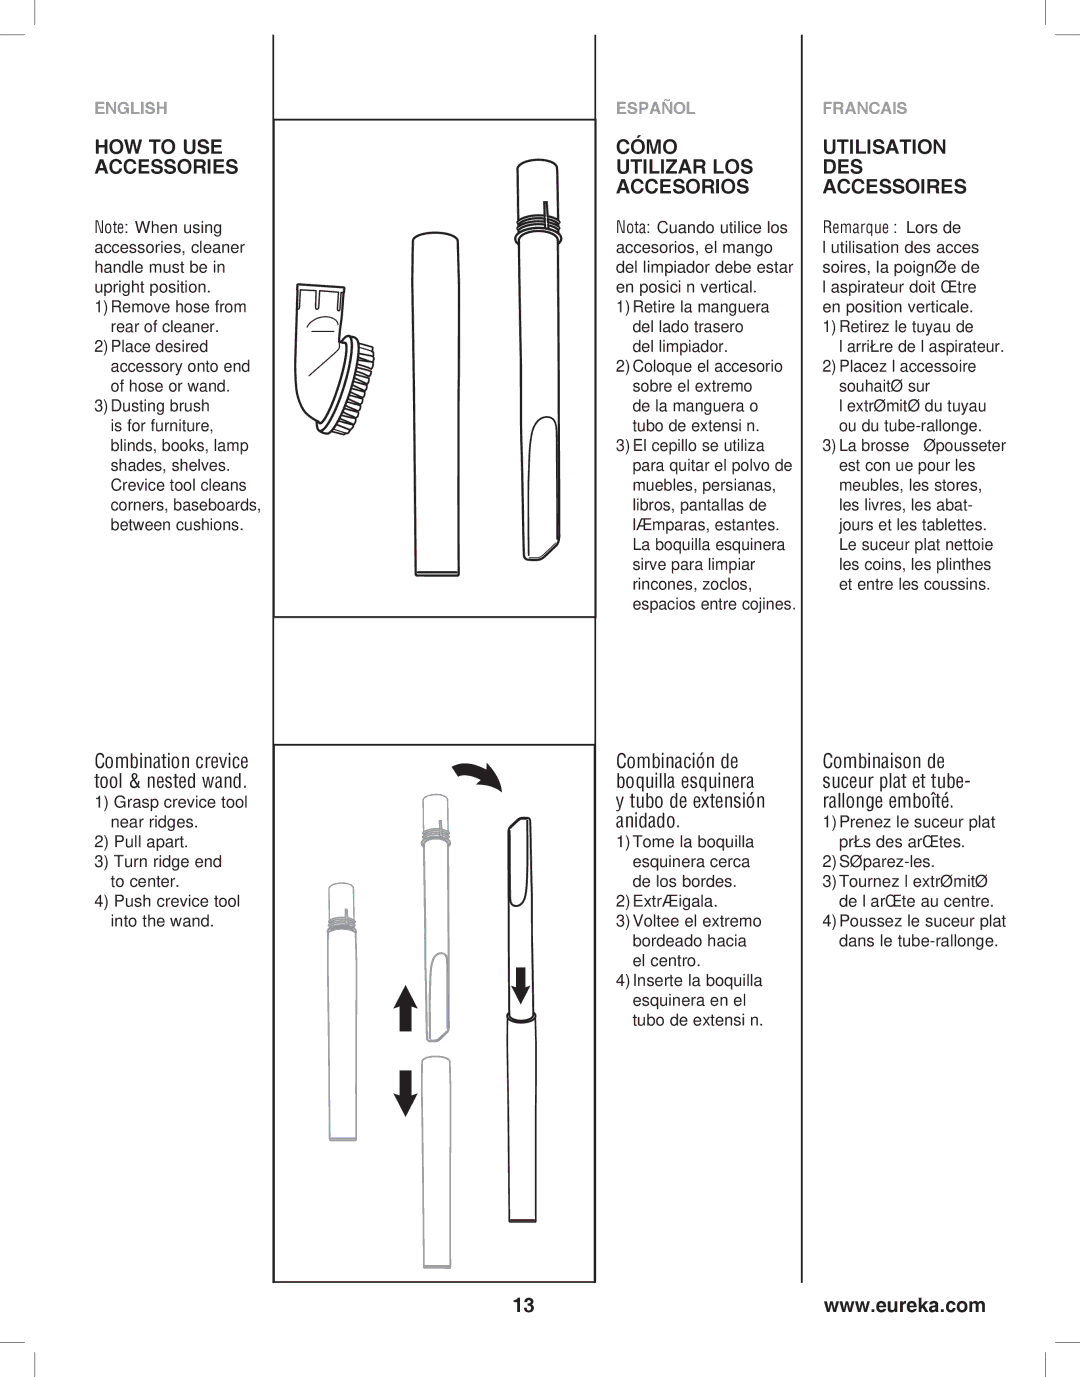 Eureka 8800-8849 manual HOW to USE Accessories, Cómo Utilizar LOS Accesorios, Utilisation DES Accessoires, Extráigala 